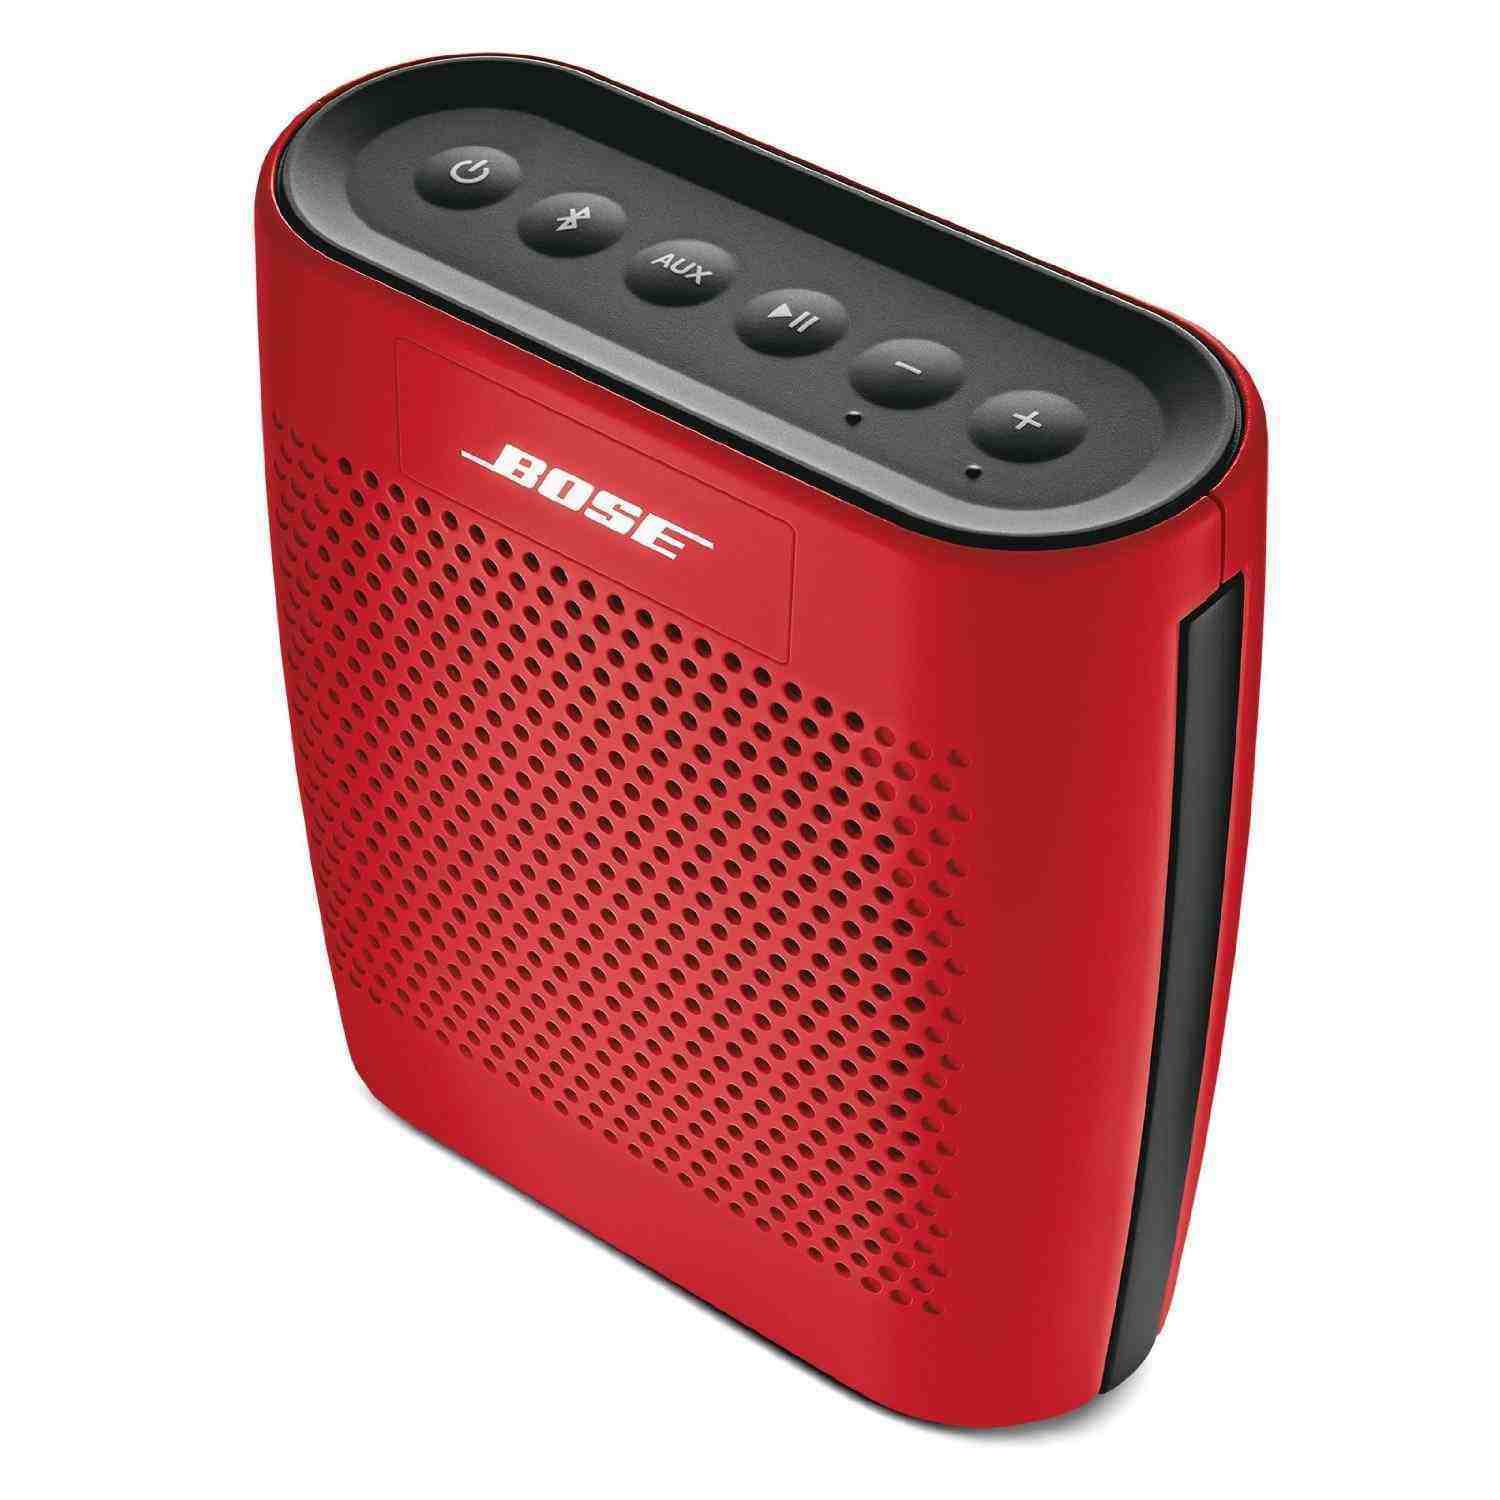 Bose SoundLink Color Bluetooth Speaker (Red) - Buy Bose SoundLink Color ...
